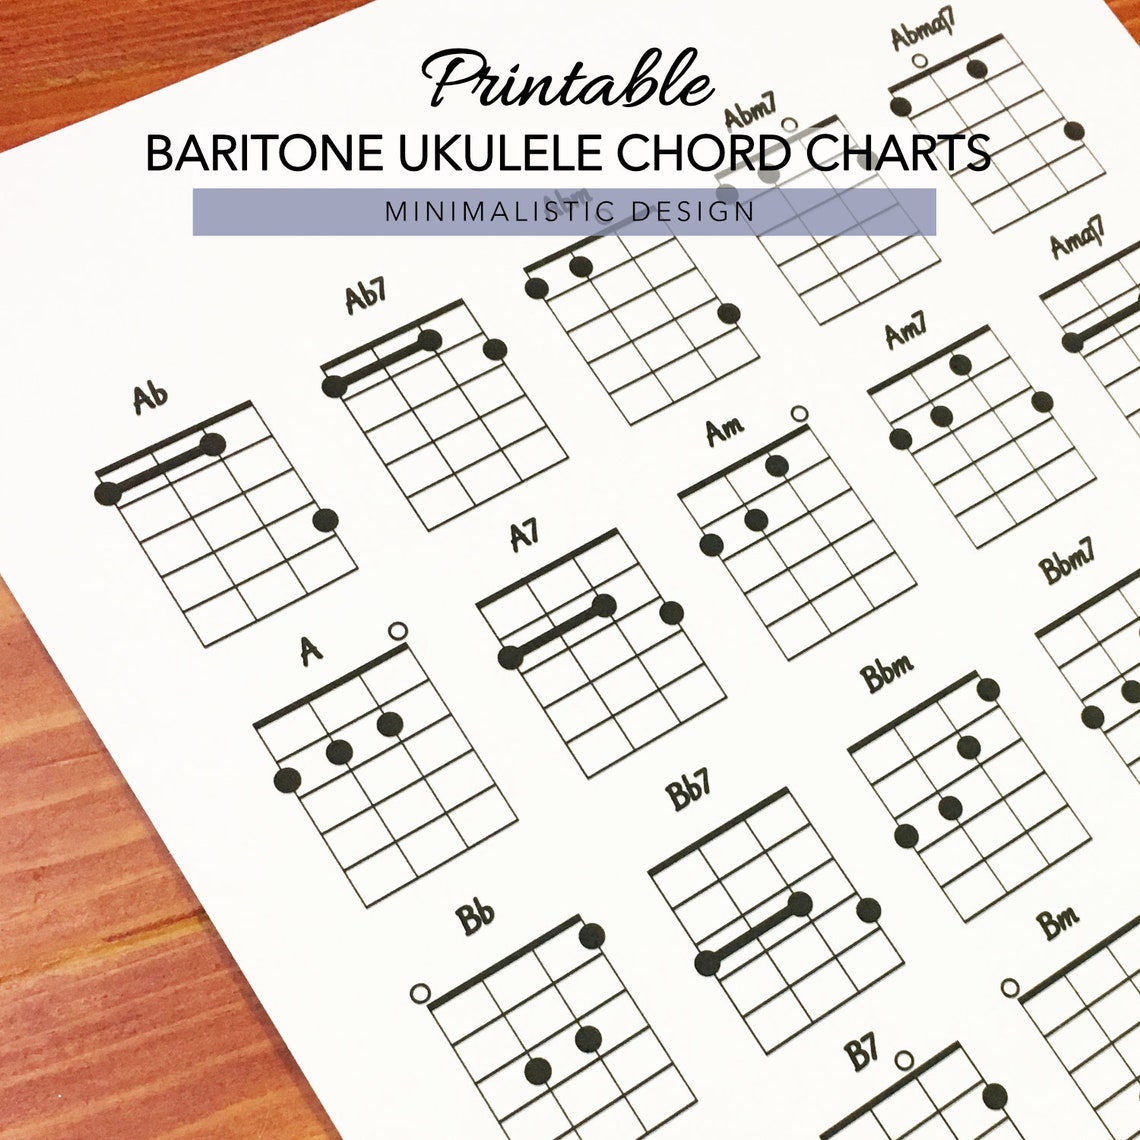 baritone-ukulele-chords-chart-print